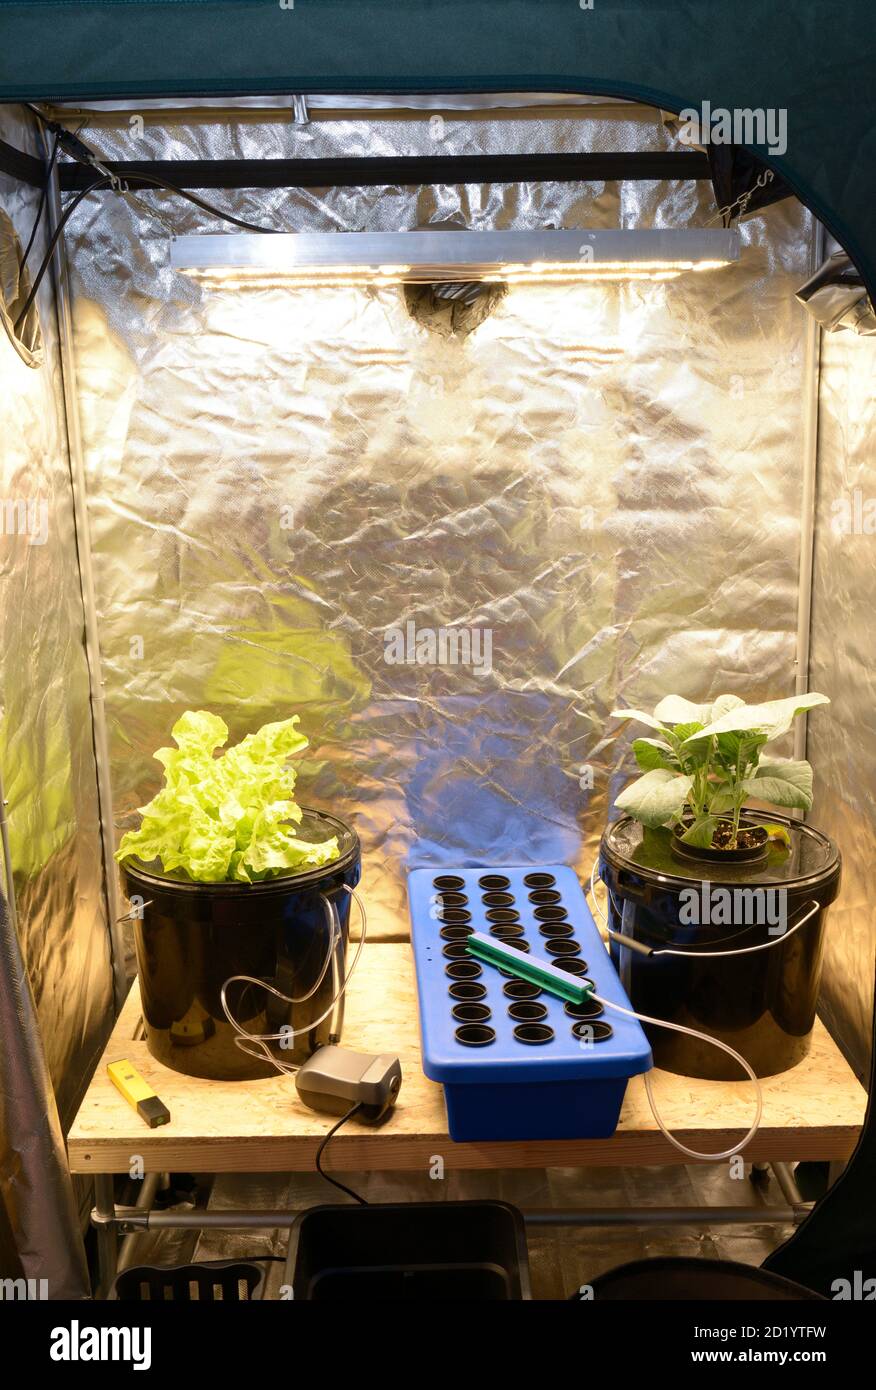 Pflanzen wachsen in einer Grow-Box, LED-Lampen, Folie andere Ausrüstung Set  Stockfotografie - Alamy